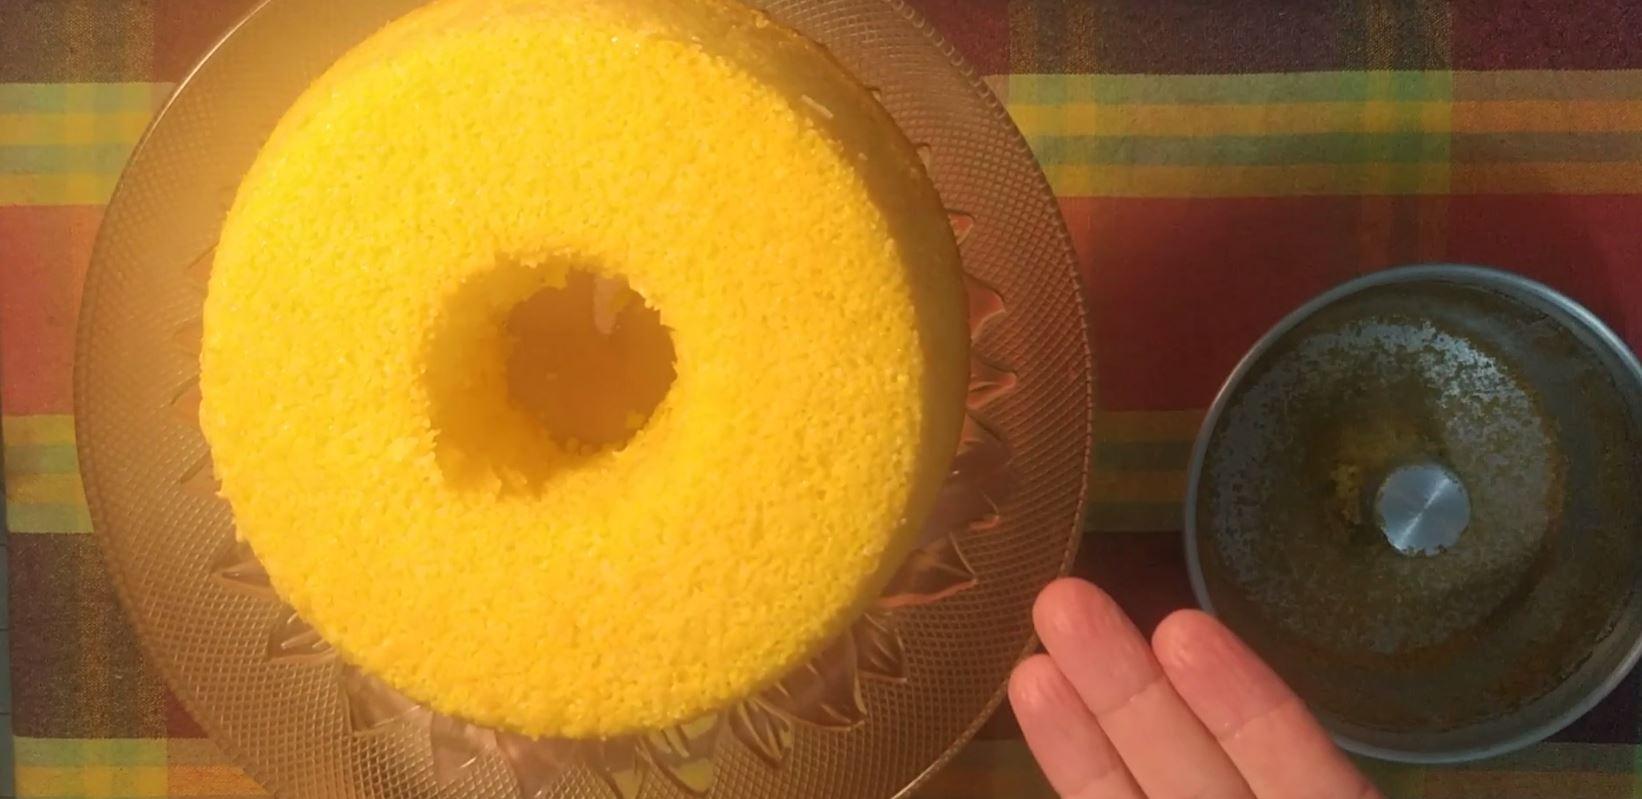 50 Anos Casados - Grãos de Açúcar - Bolos decorados - Cake Design